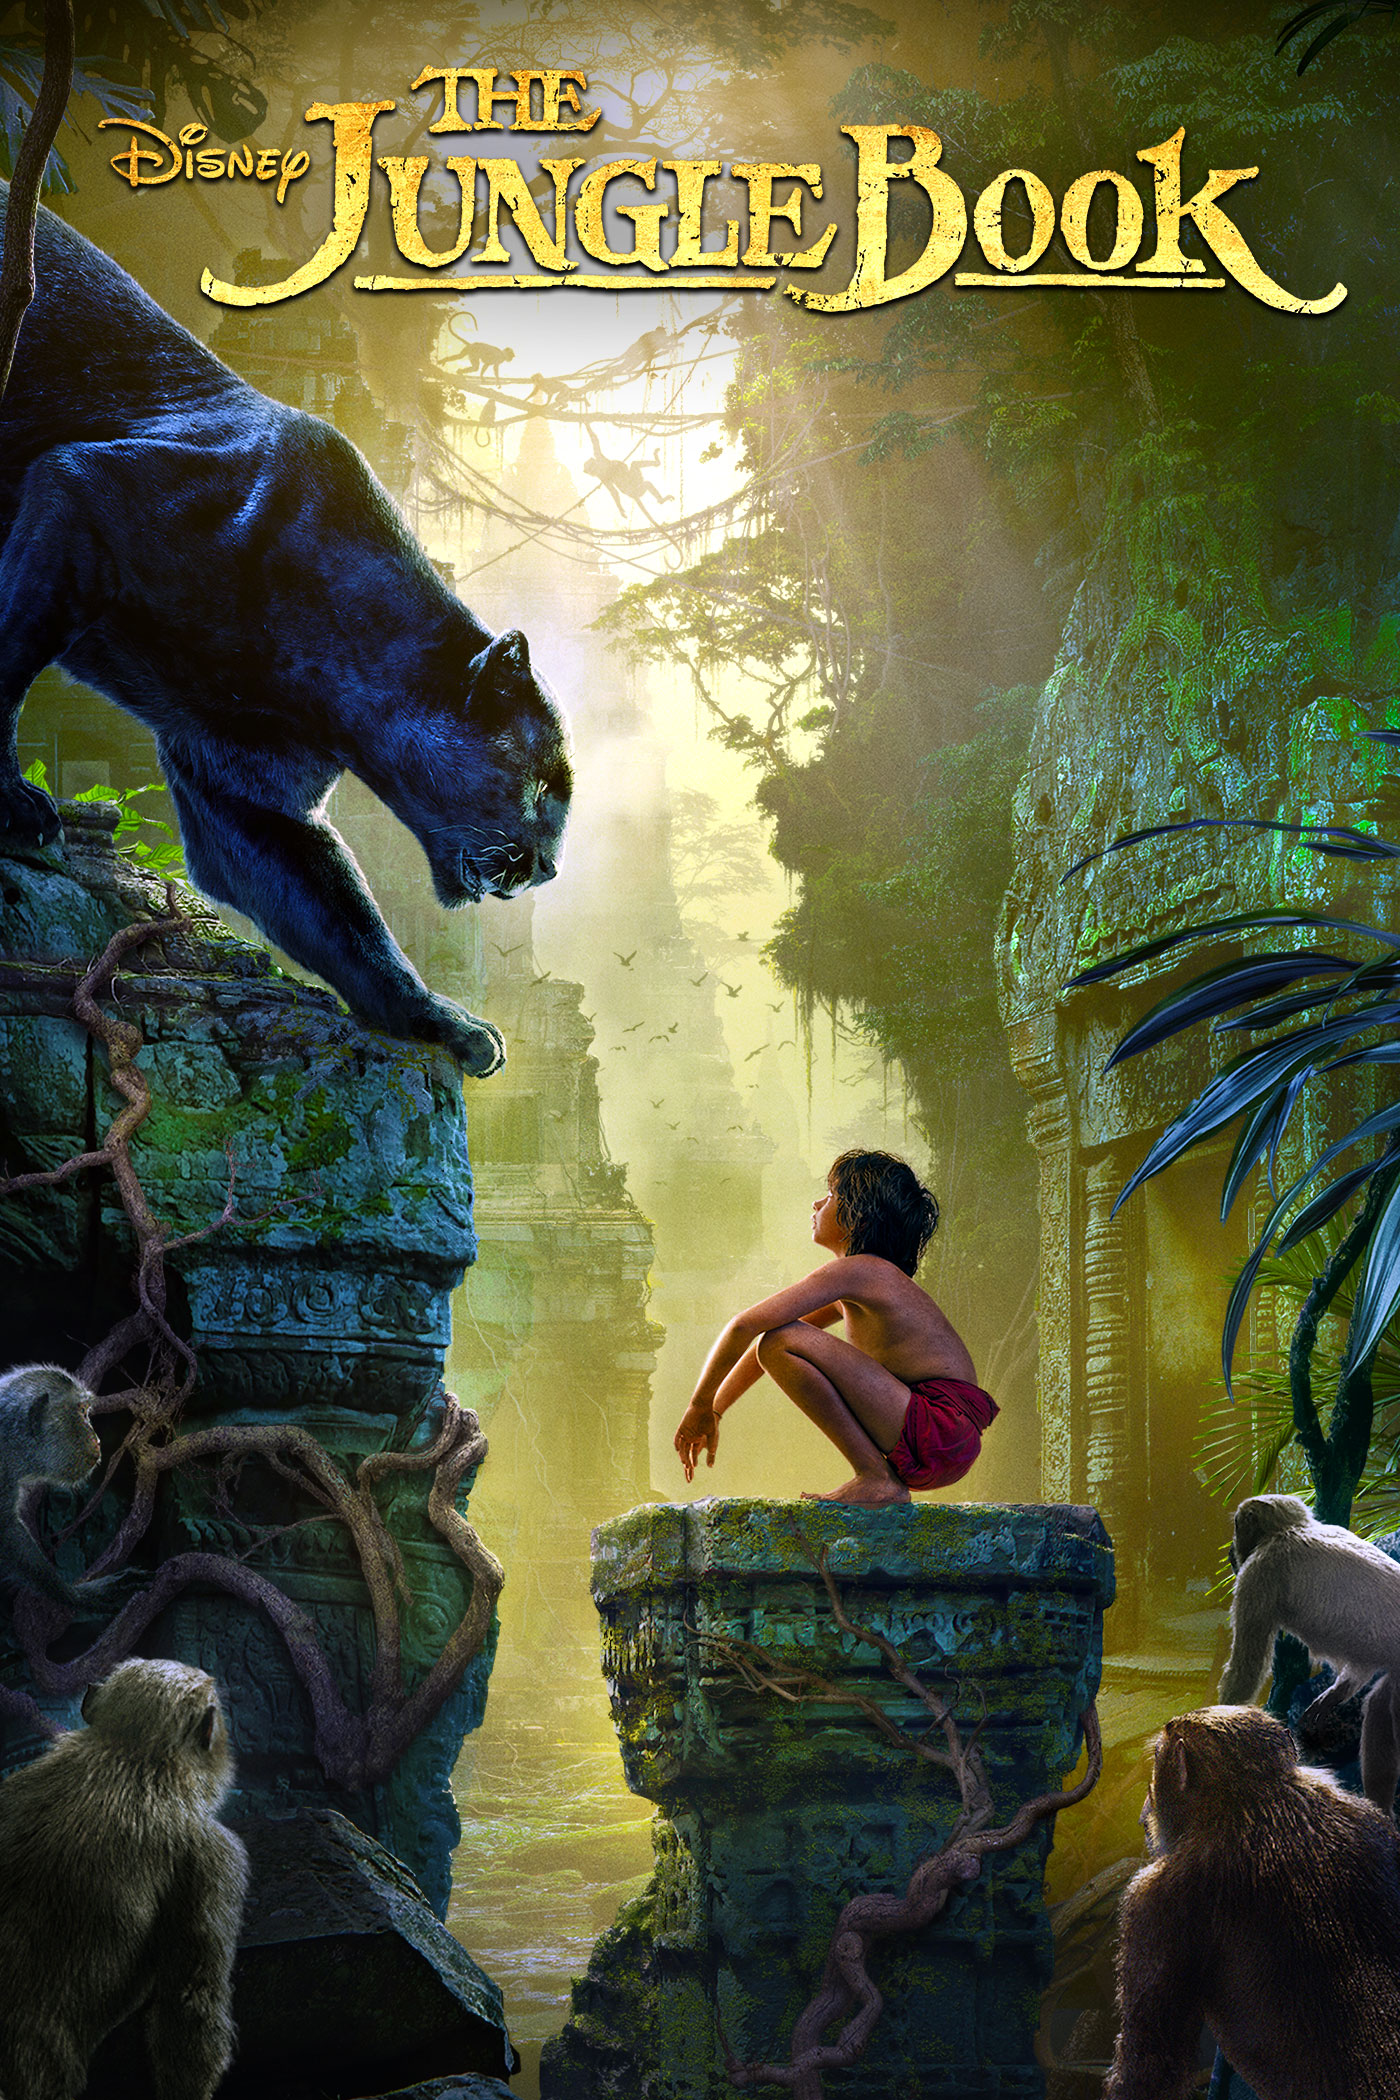 Cậu Bé Rừng Xanh - The Jungle Book 2016